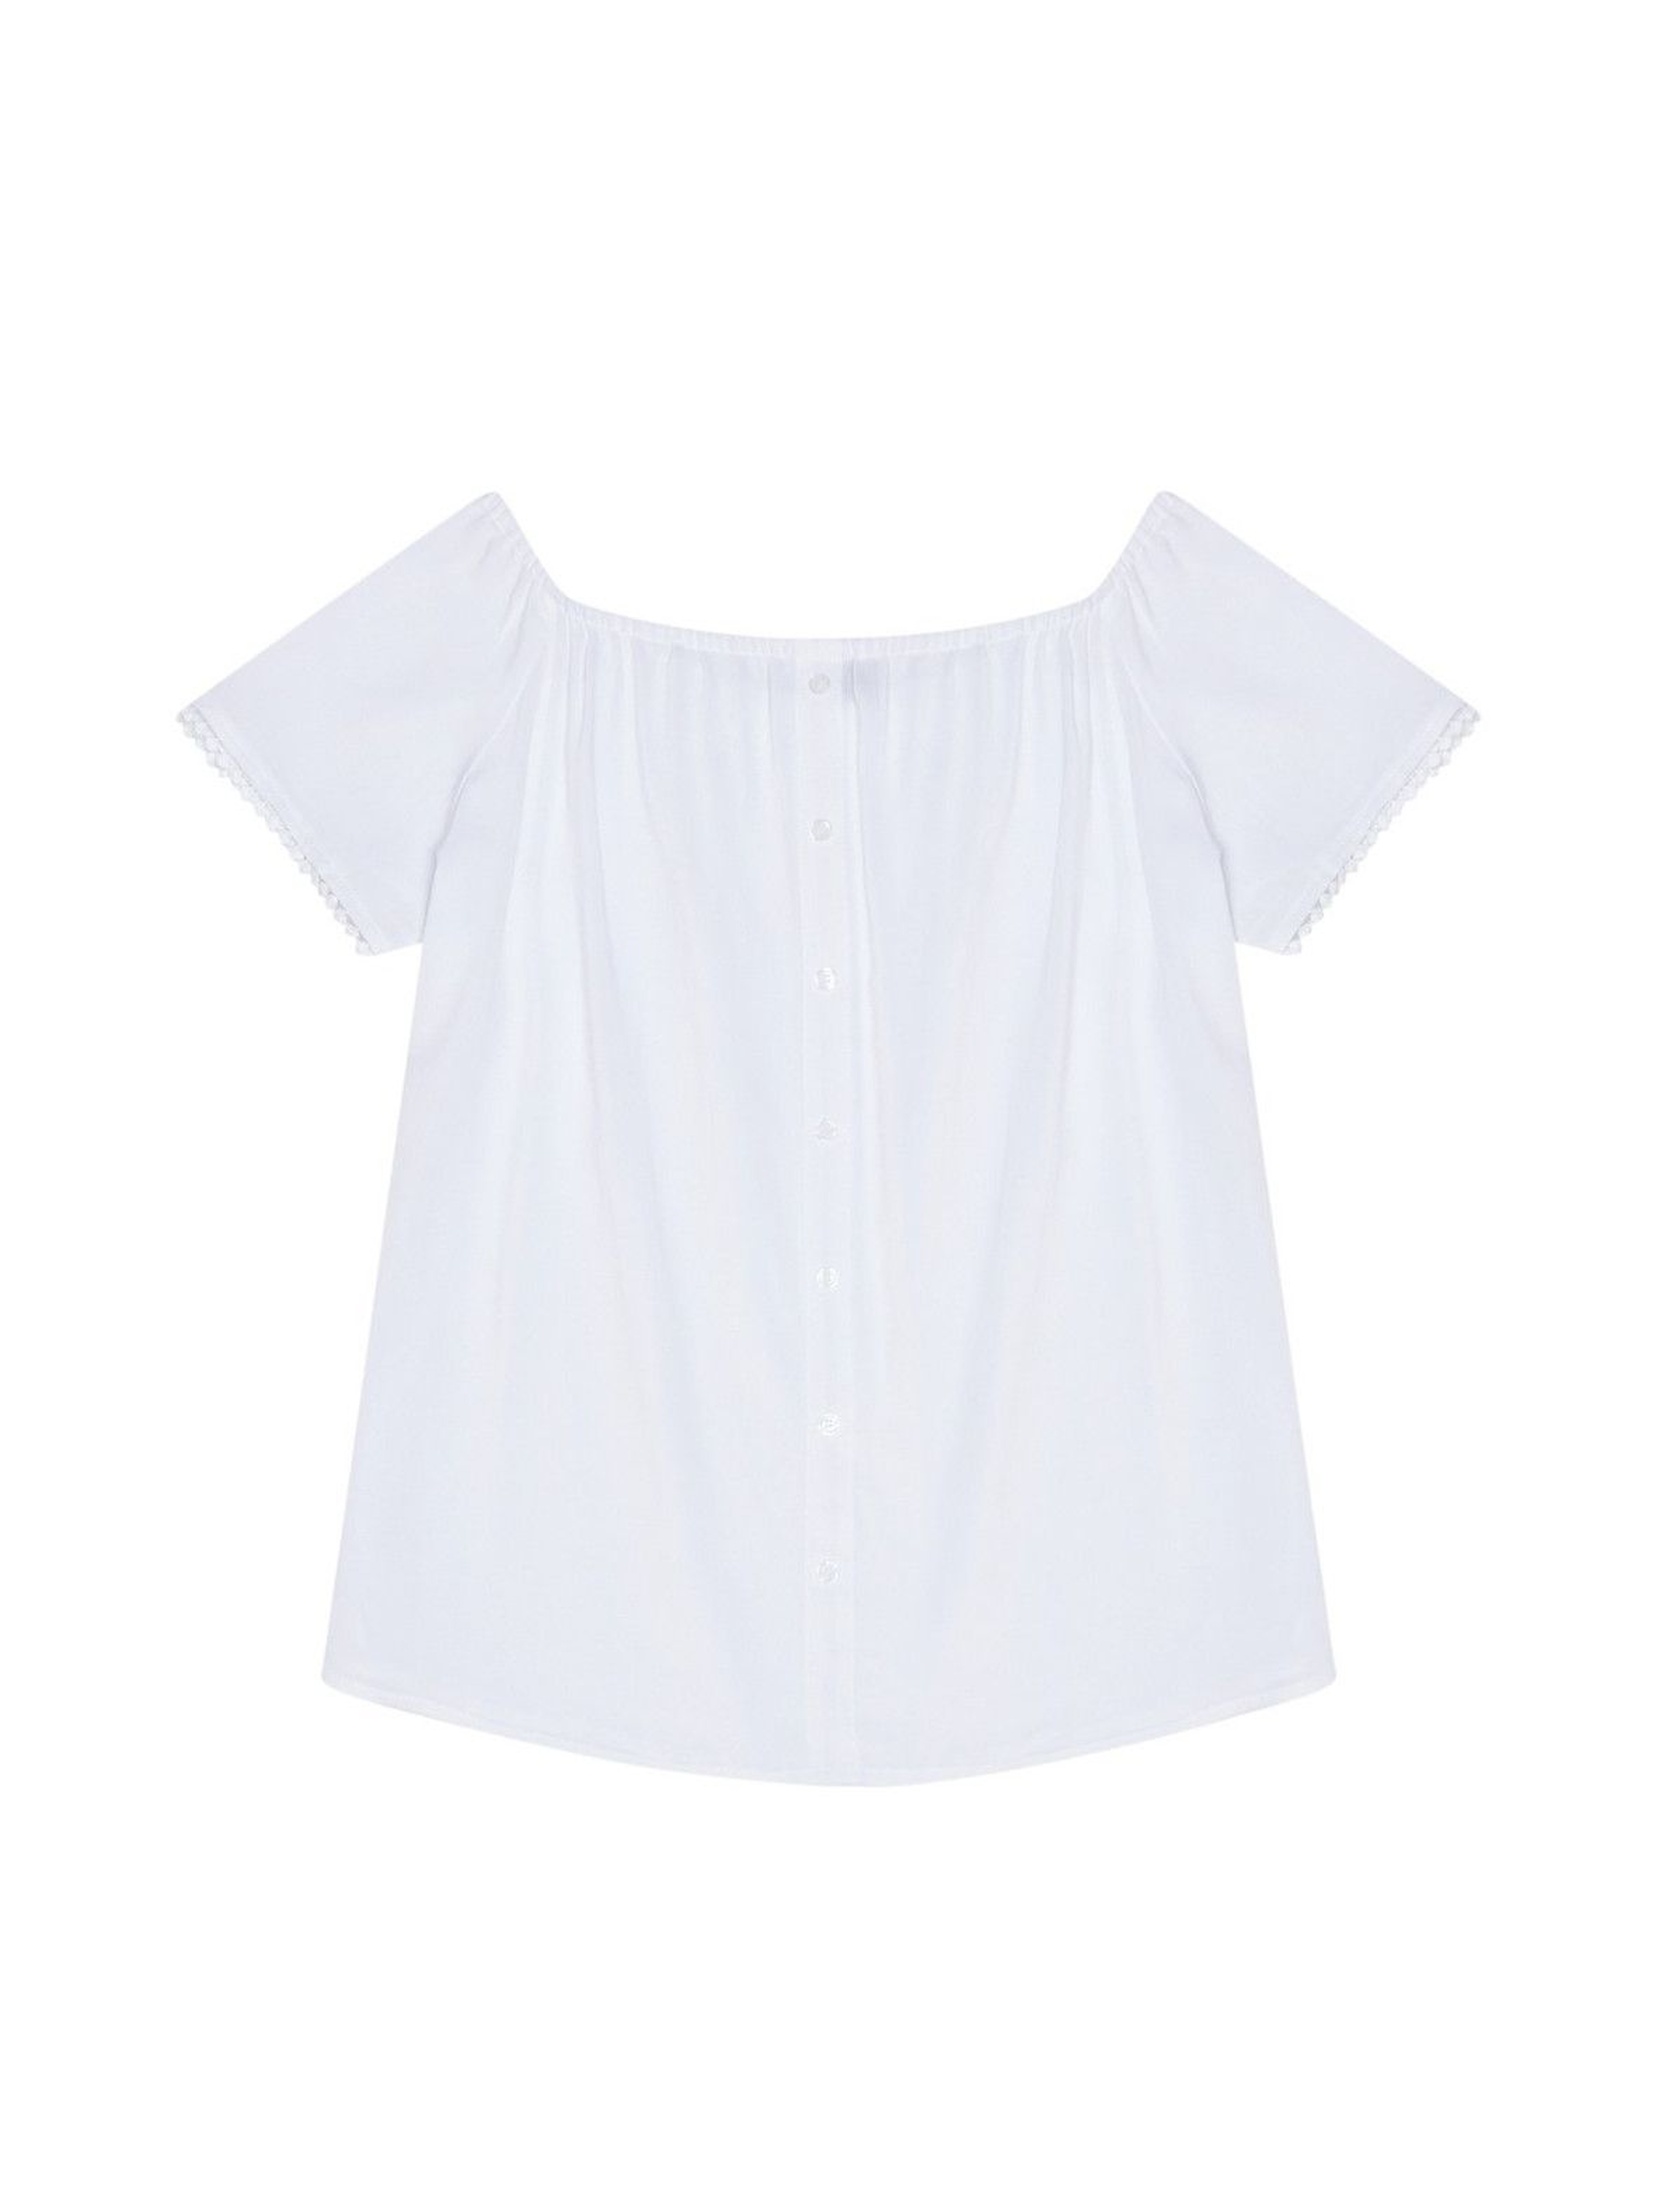 Bluzka damska koszulowa z ozdobnymi rękawami biała